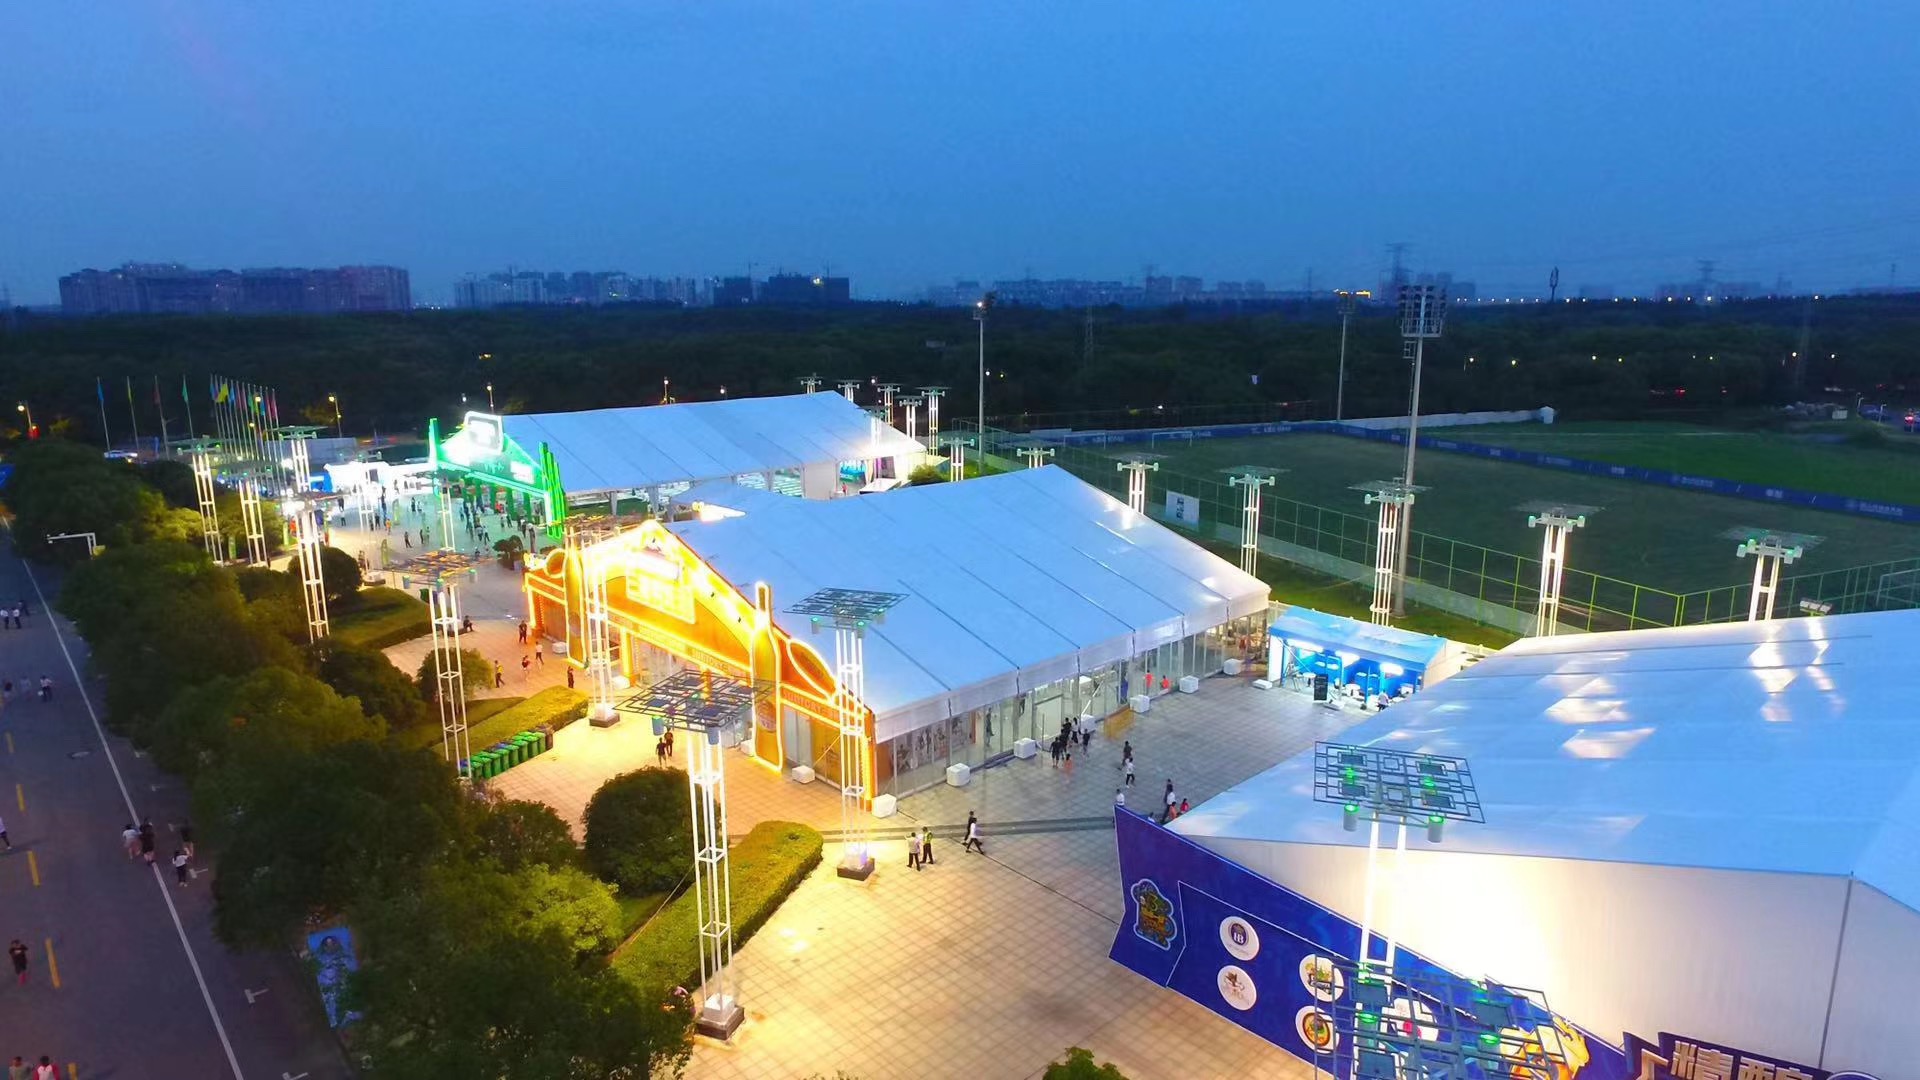 上海 专业户外大型展览会议篷房帐篷出租出售定制